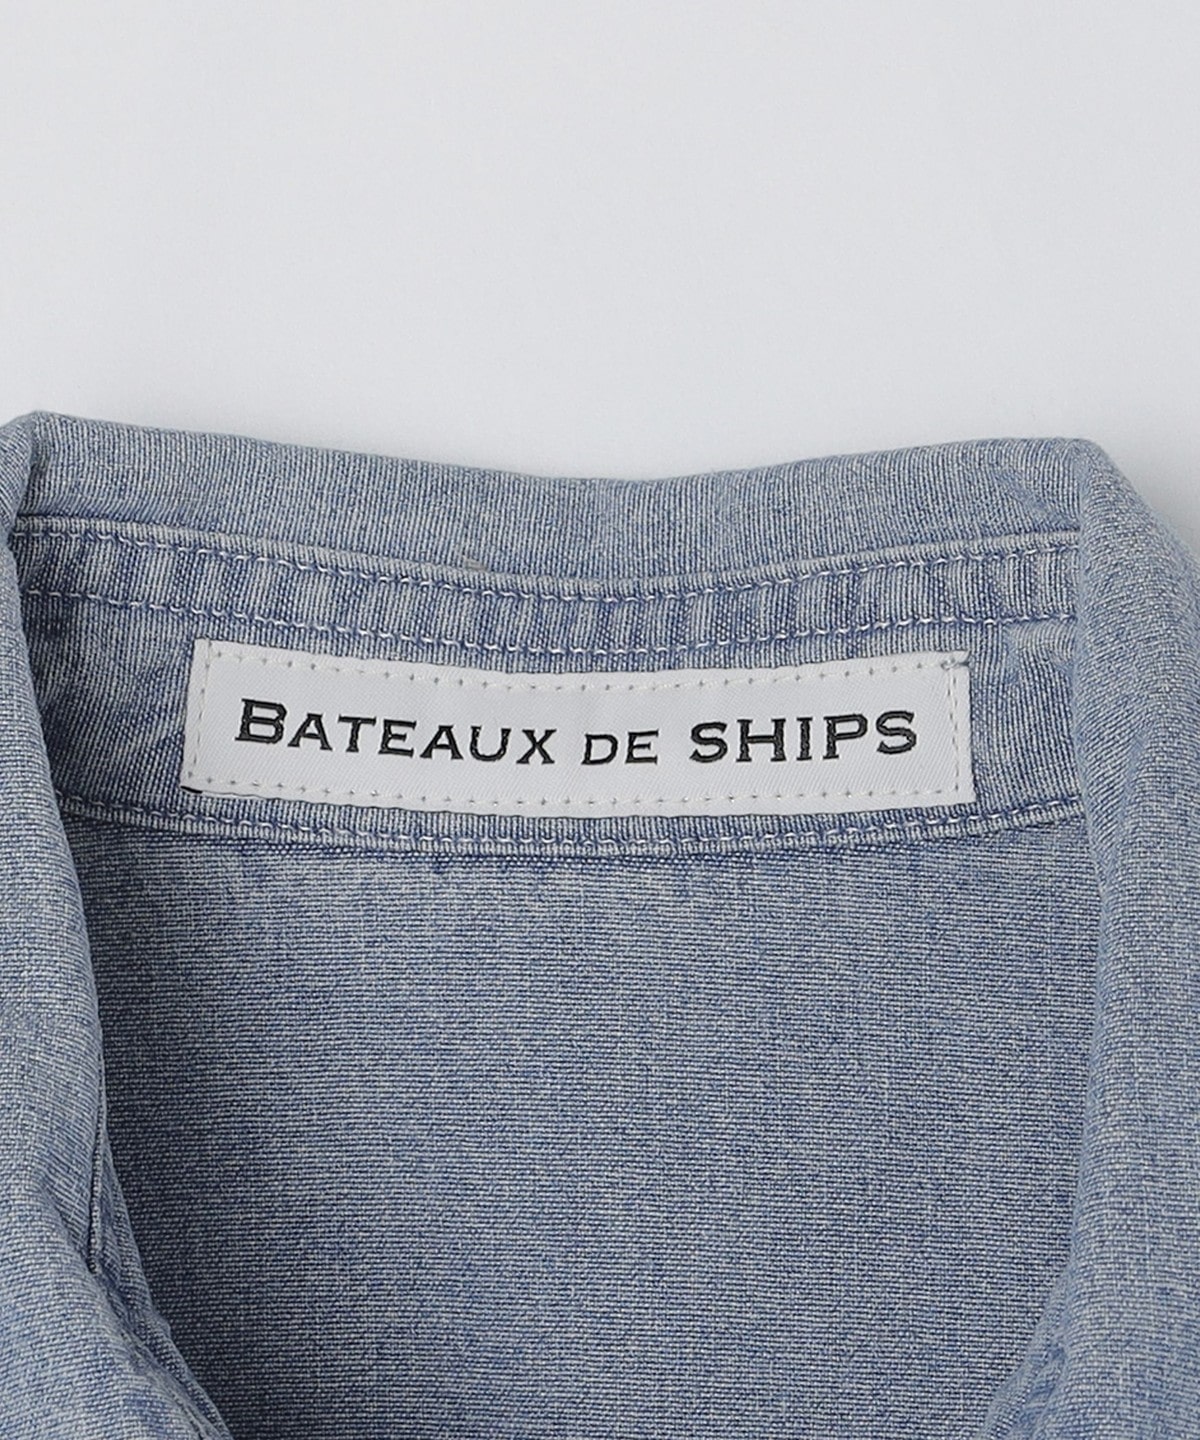 BATEAUX DE SHIPS: ダンガリー ウエスタンシャツ: シャツ